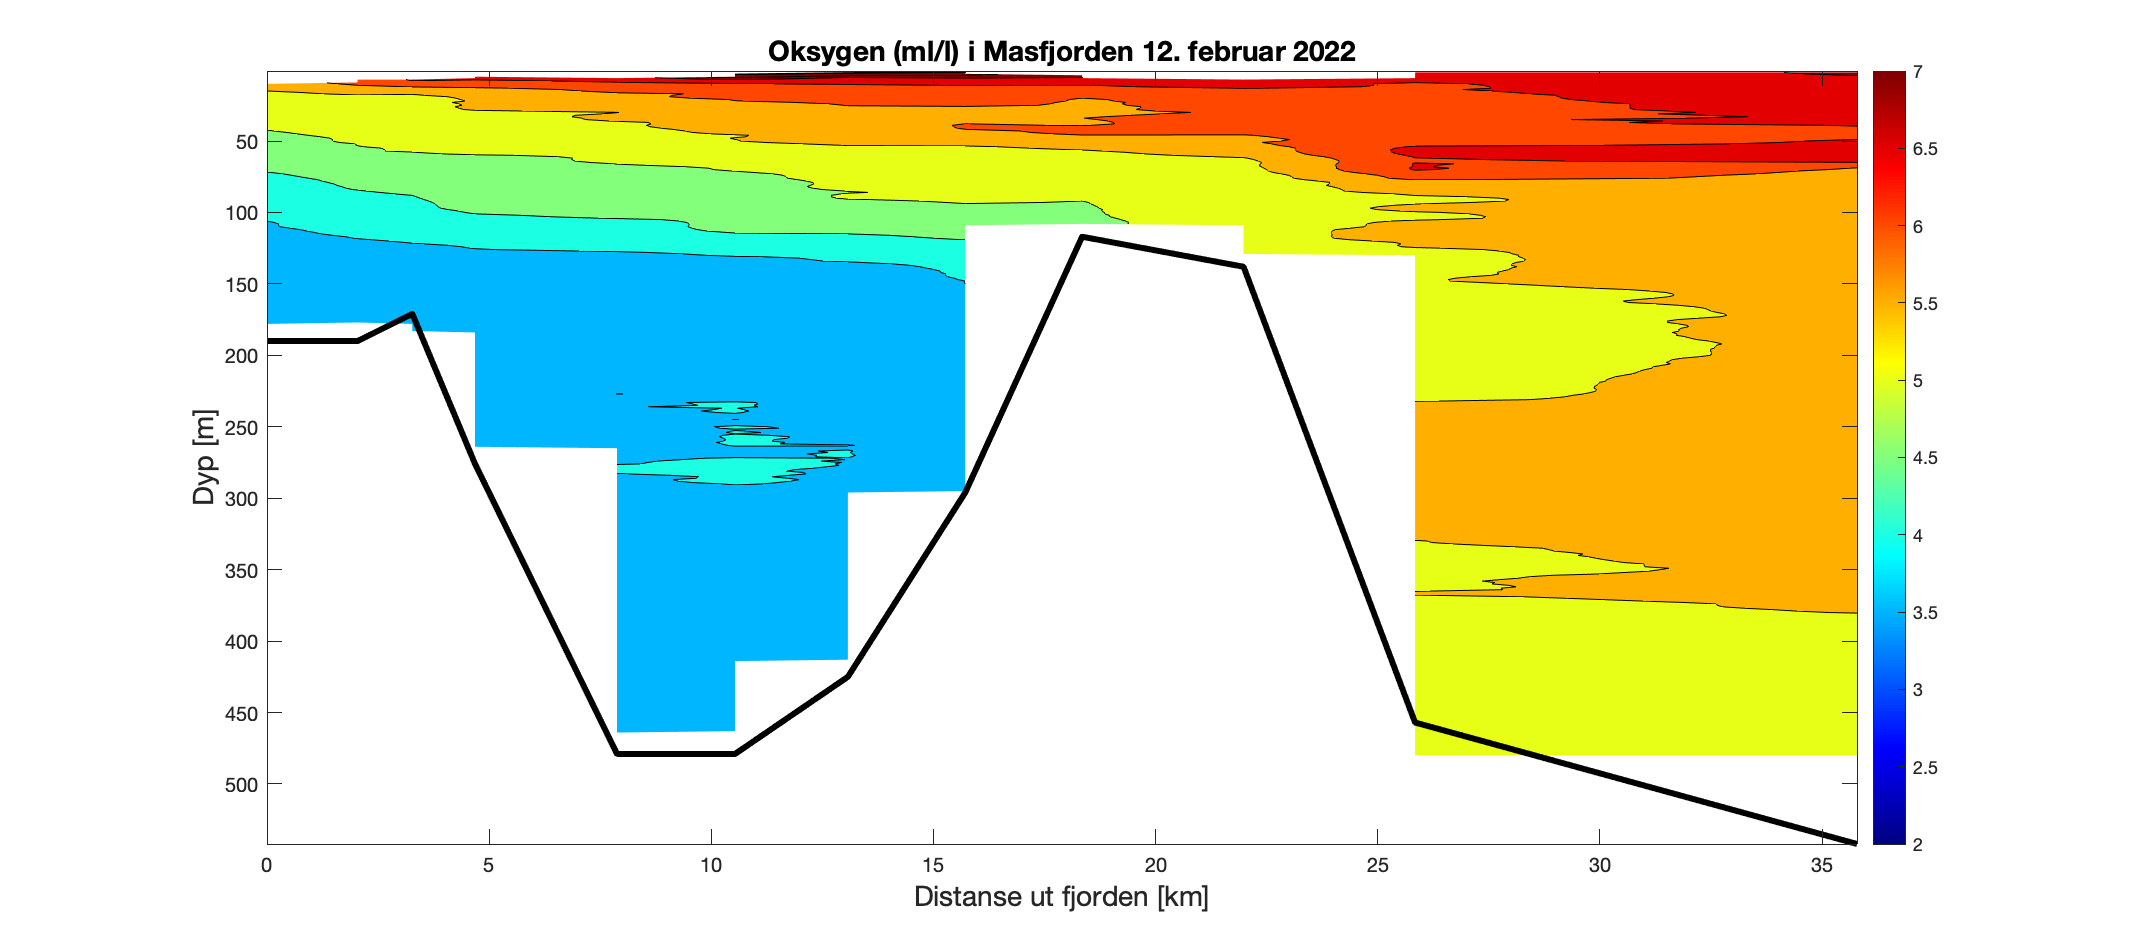 Figuren viser et histogram som illustrerer variasjon i oksygeninnhold (ml/l) i vannsøylen (0-500 meter) utover i Masfjorden (0-35 km ut fjorden). Fargeskalaen representerer oksygeninnhold fra 7 ml/l (rødt) til 2 ml/l (fiolett). Det innerste fjordbassenget har stor variasjon i O2-innhold gjennom vannsøylen, med lavere verdier enn 5 ml/l dypere enn 75 m. Det ytterste fjordbassenget er mer O2-rikt, med verdier mellom 5 og 6,5 ml/l gjennom vannsøylen.